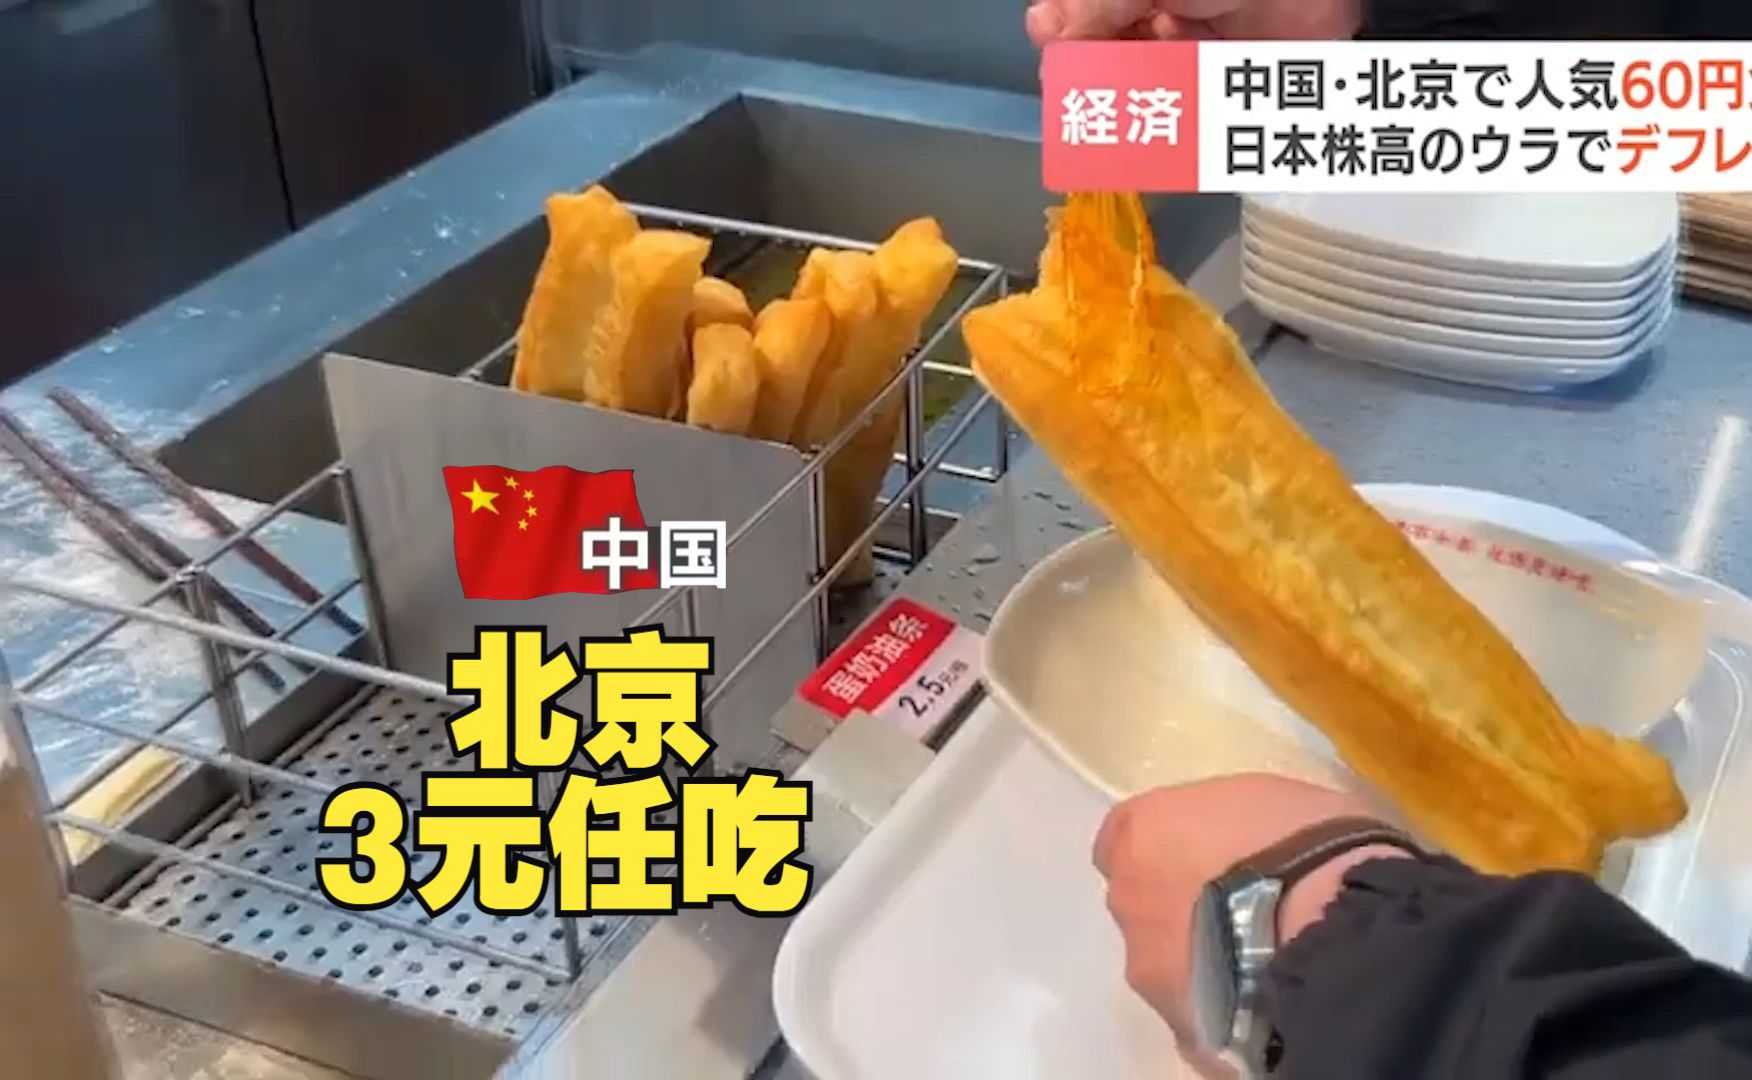 “只要中国打个喷嚏，日本就会跟着感冒”：北京3元早餐店的味道怎么样？(中日双语)(24/03/22)